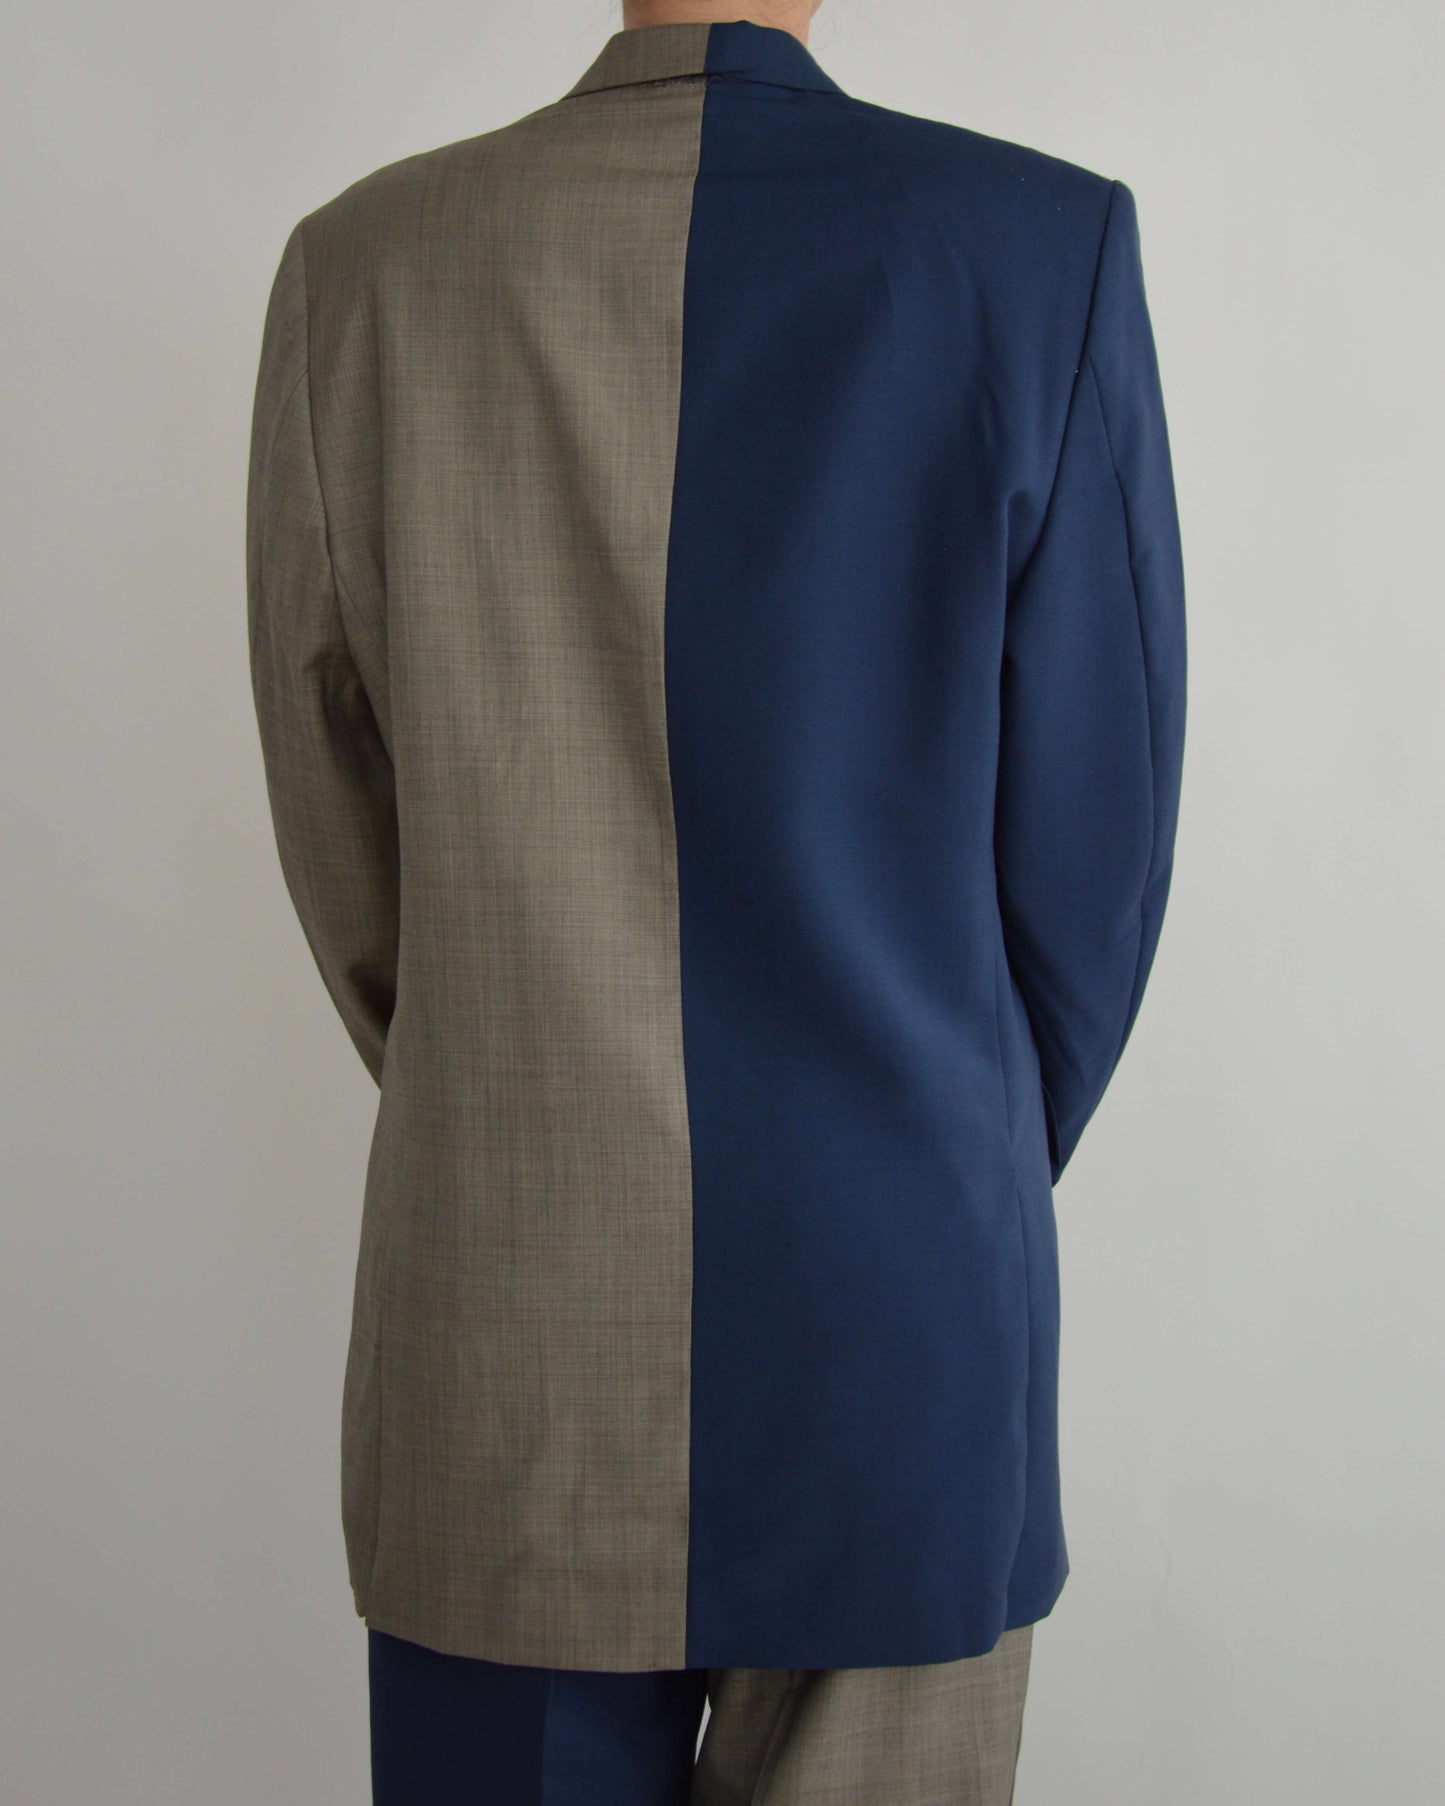 DUO Suit - Beige on Blue (M/L)